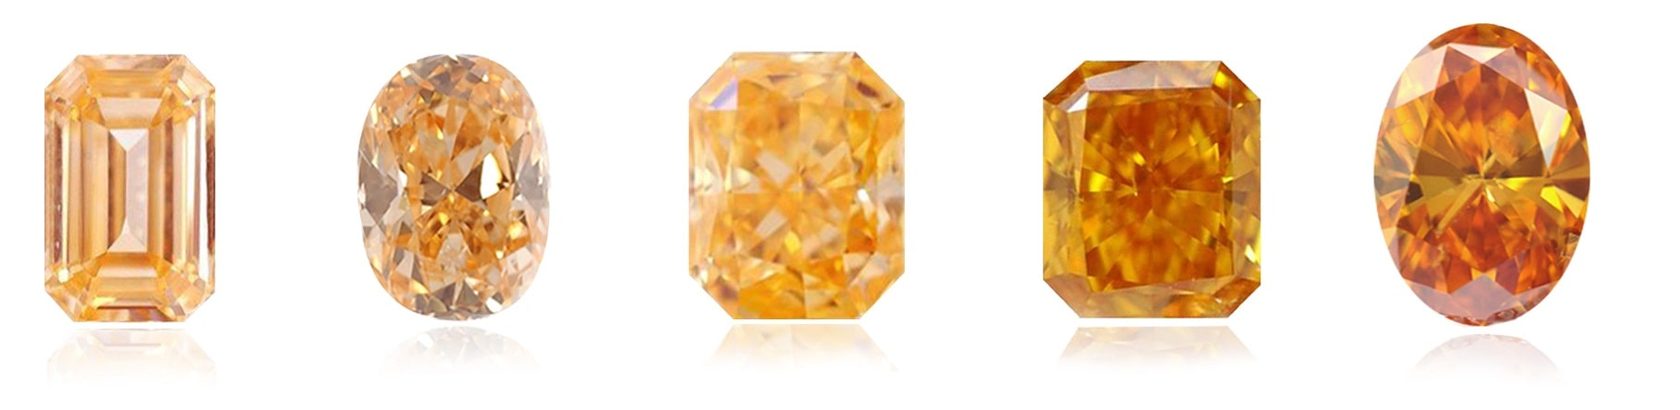 Степень насыщенности цвета для фантазийных оранжевых бриллиантов.